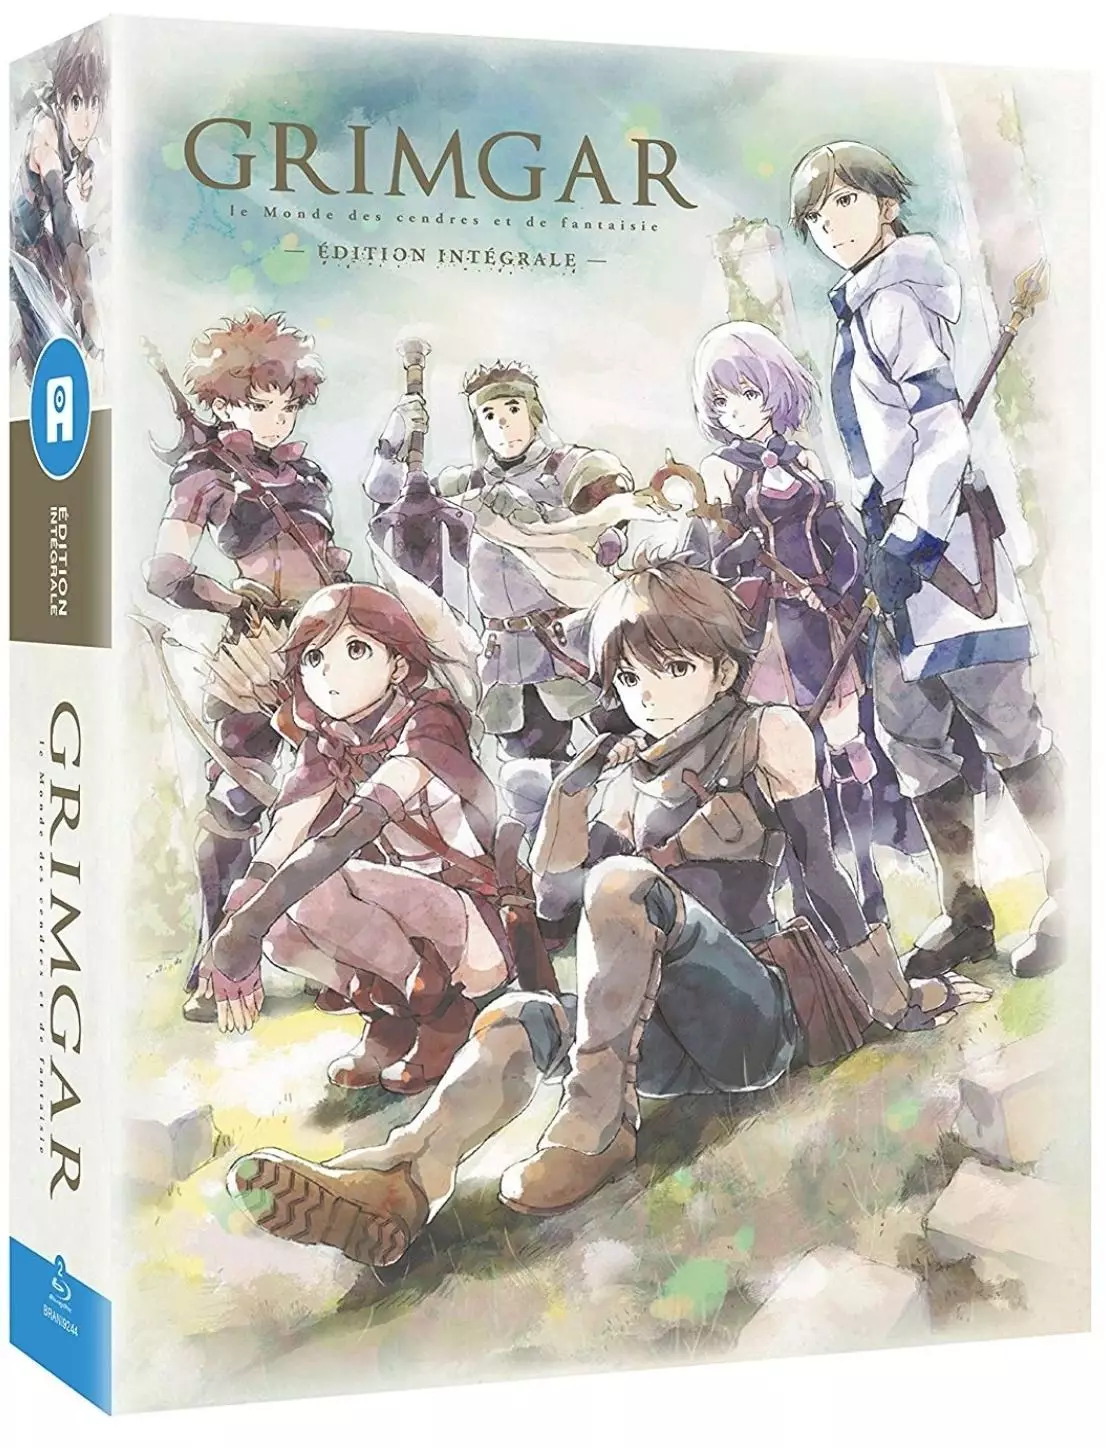 Grimgar - Le Monde de cendres et de fantaisie - Intégrale Blu-ray